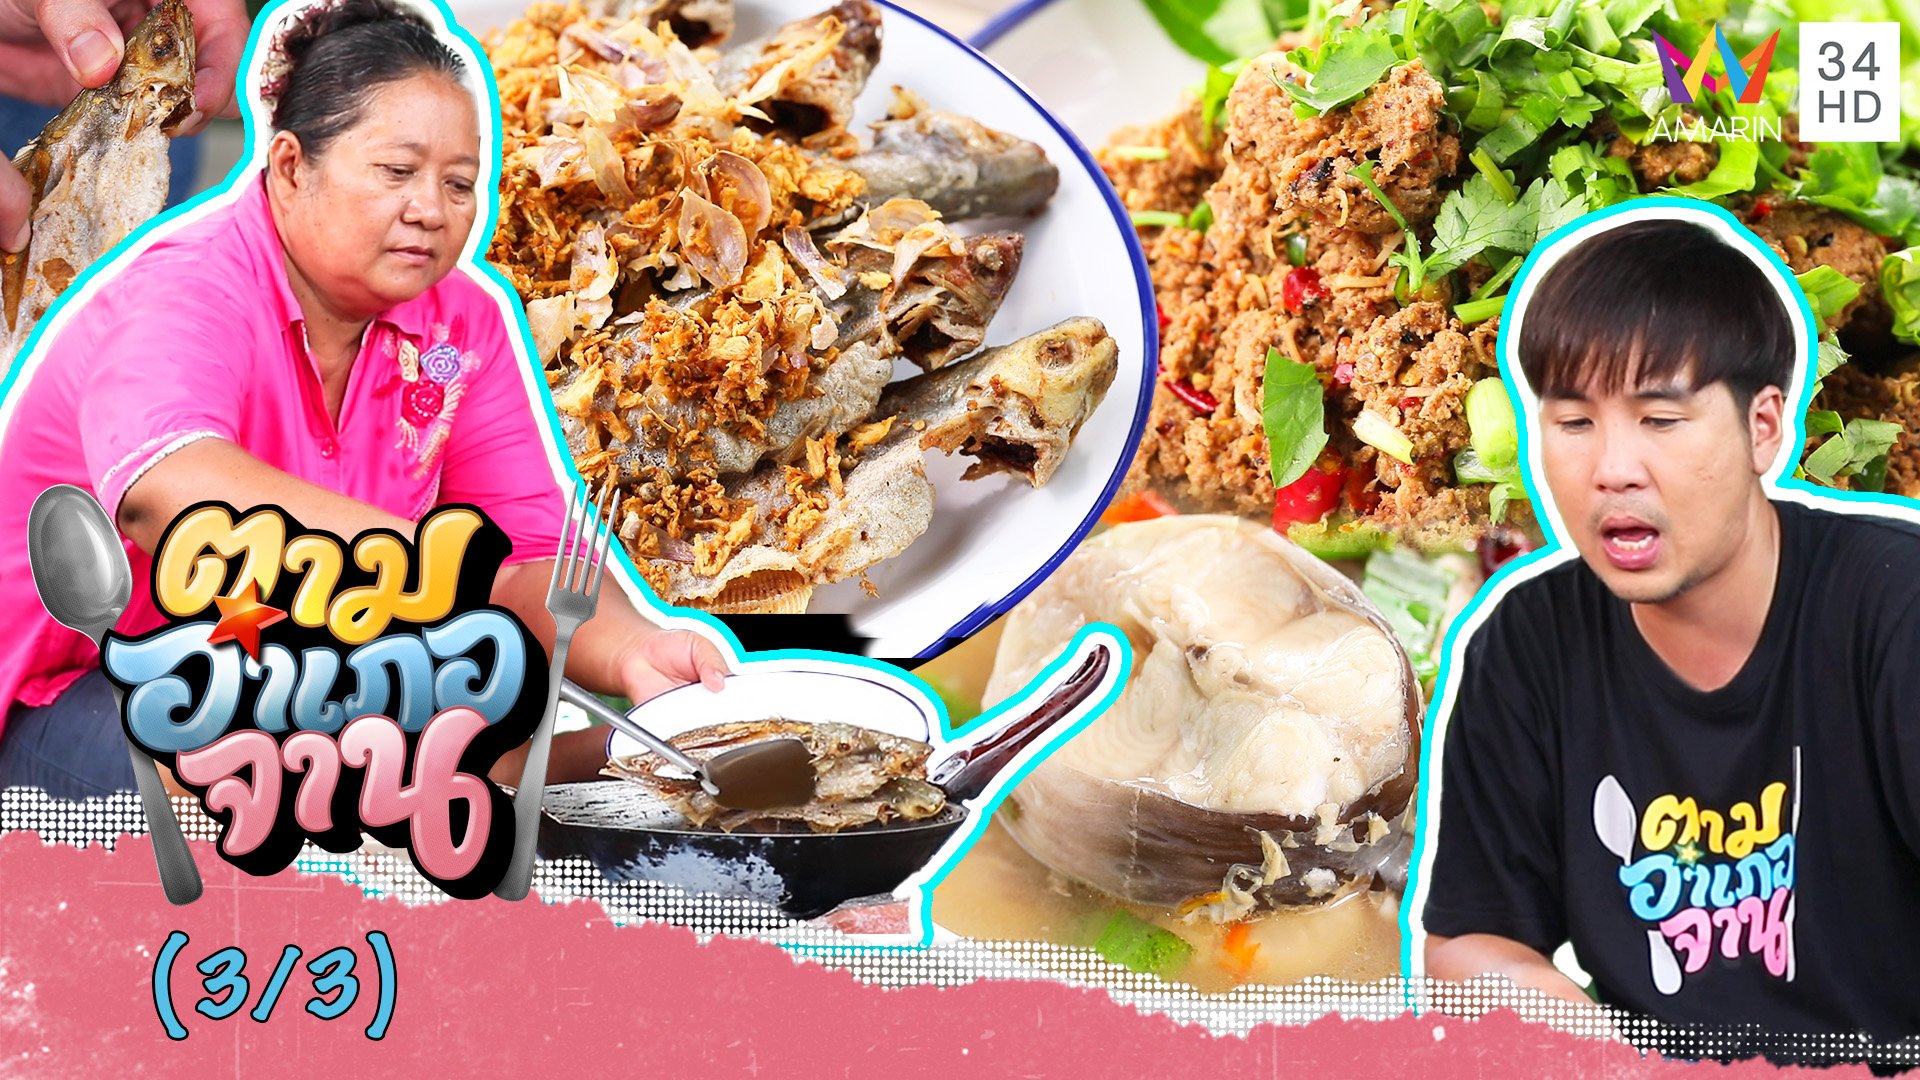 เมนูปลาน้ำจืด ต้มยำปลากดคัง-ลาบปลากา-ปลาสังกะวาดทอดกระเทียมพริกไทย | ตามอำเภอจาน | 12 พ.ย. 65 (3/3) | AMARIN TVHD34